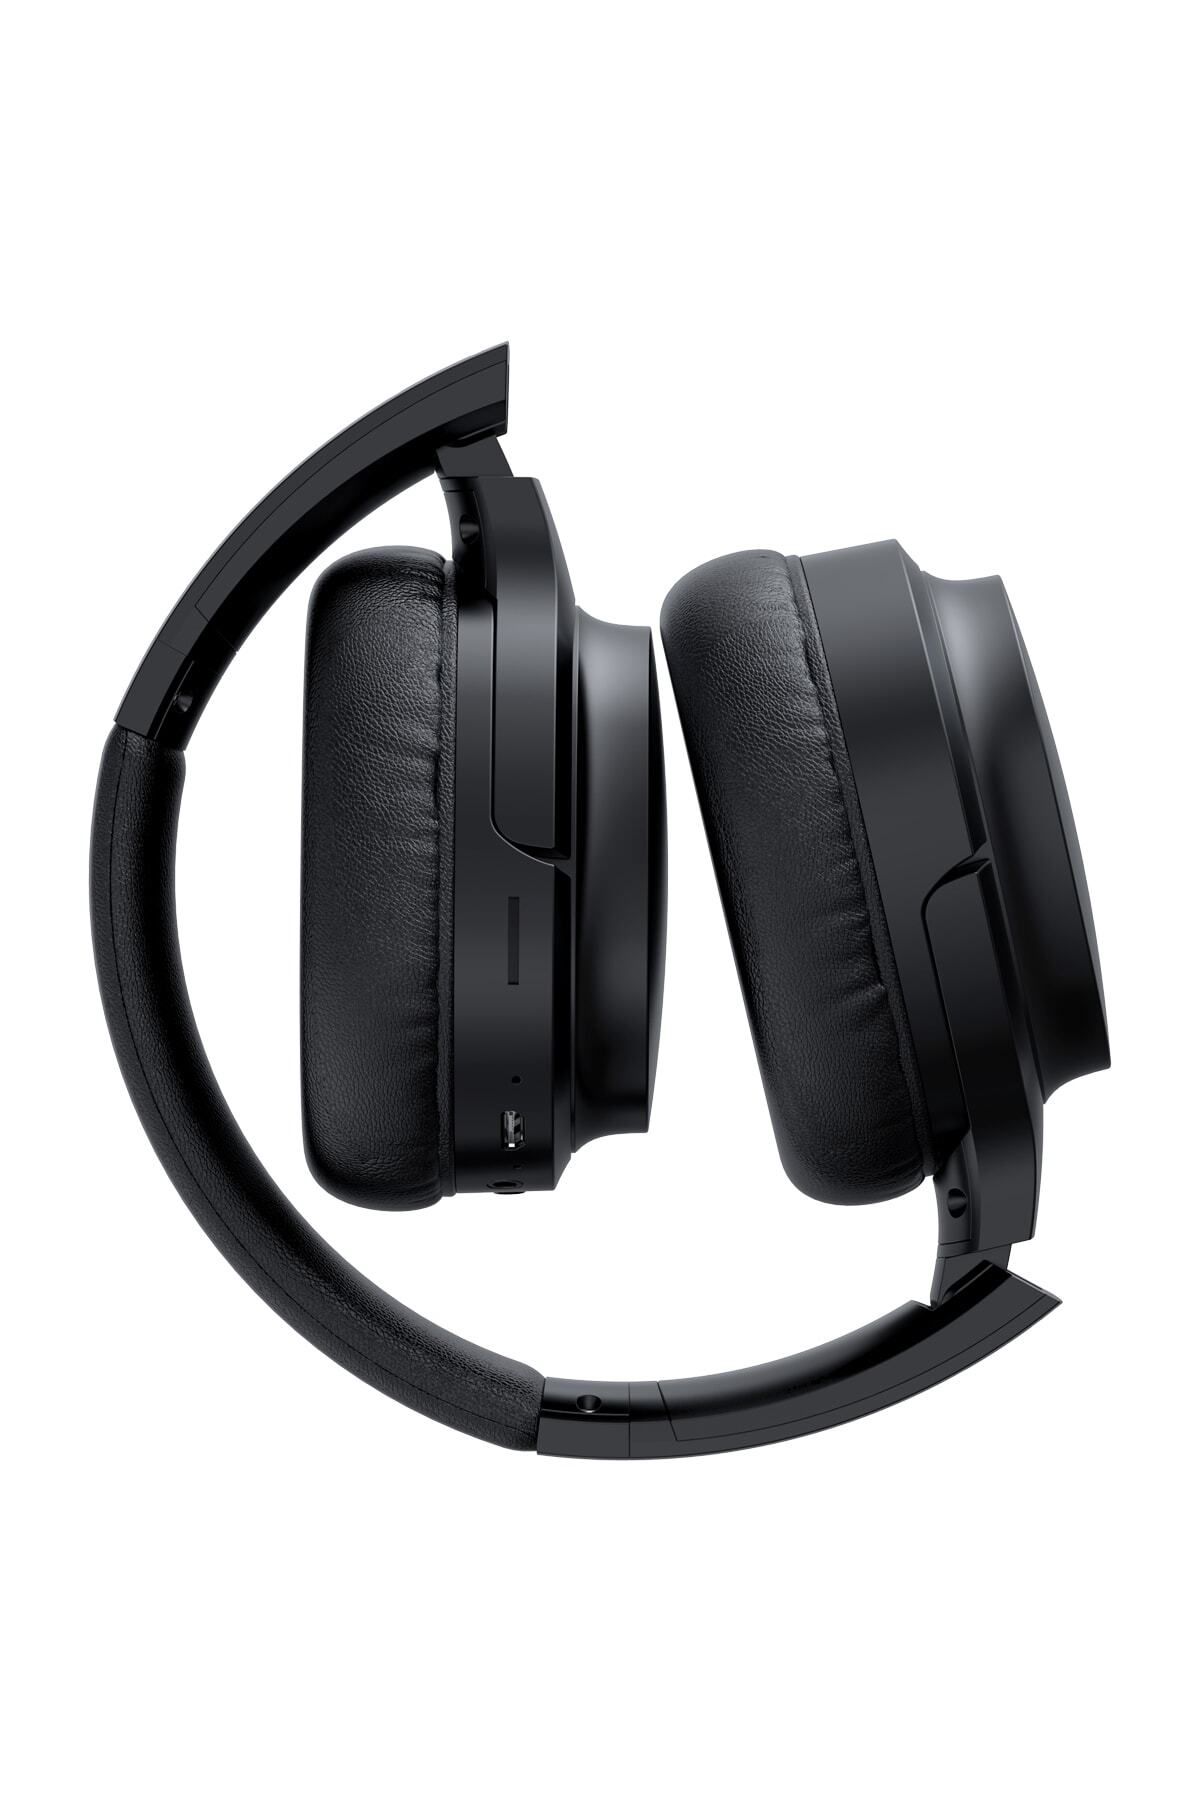 Havit I62 Katlanabilir Kafaüstü Mikrofonlu Bluetooth Kulaklık